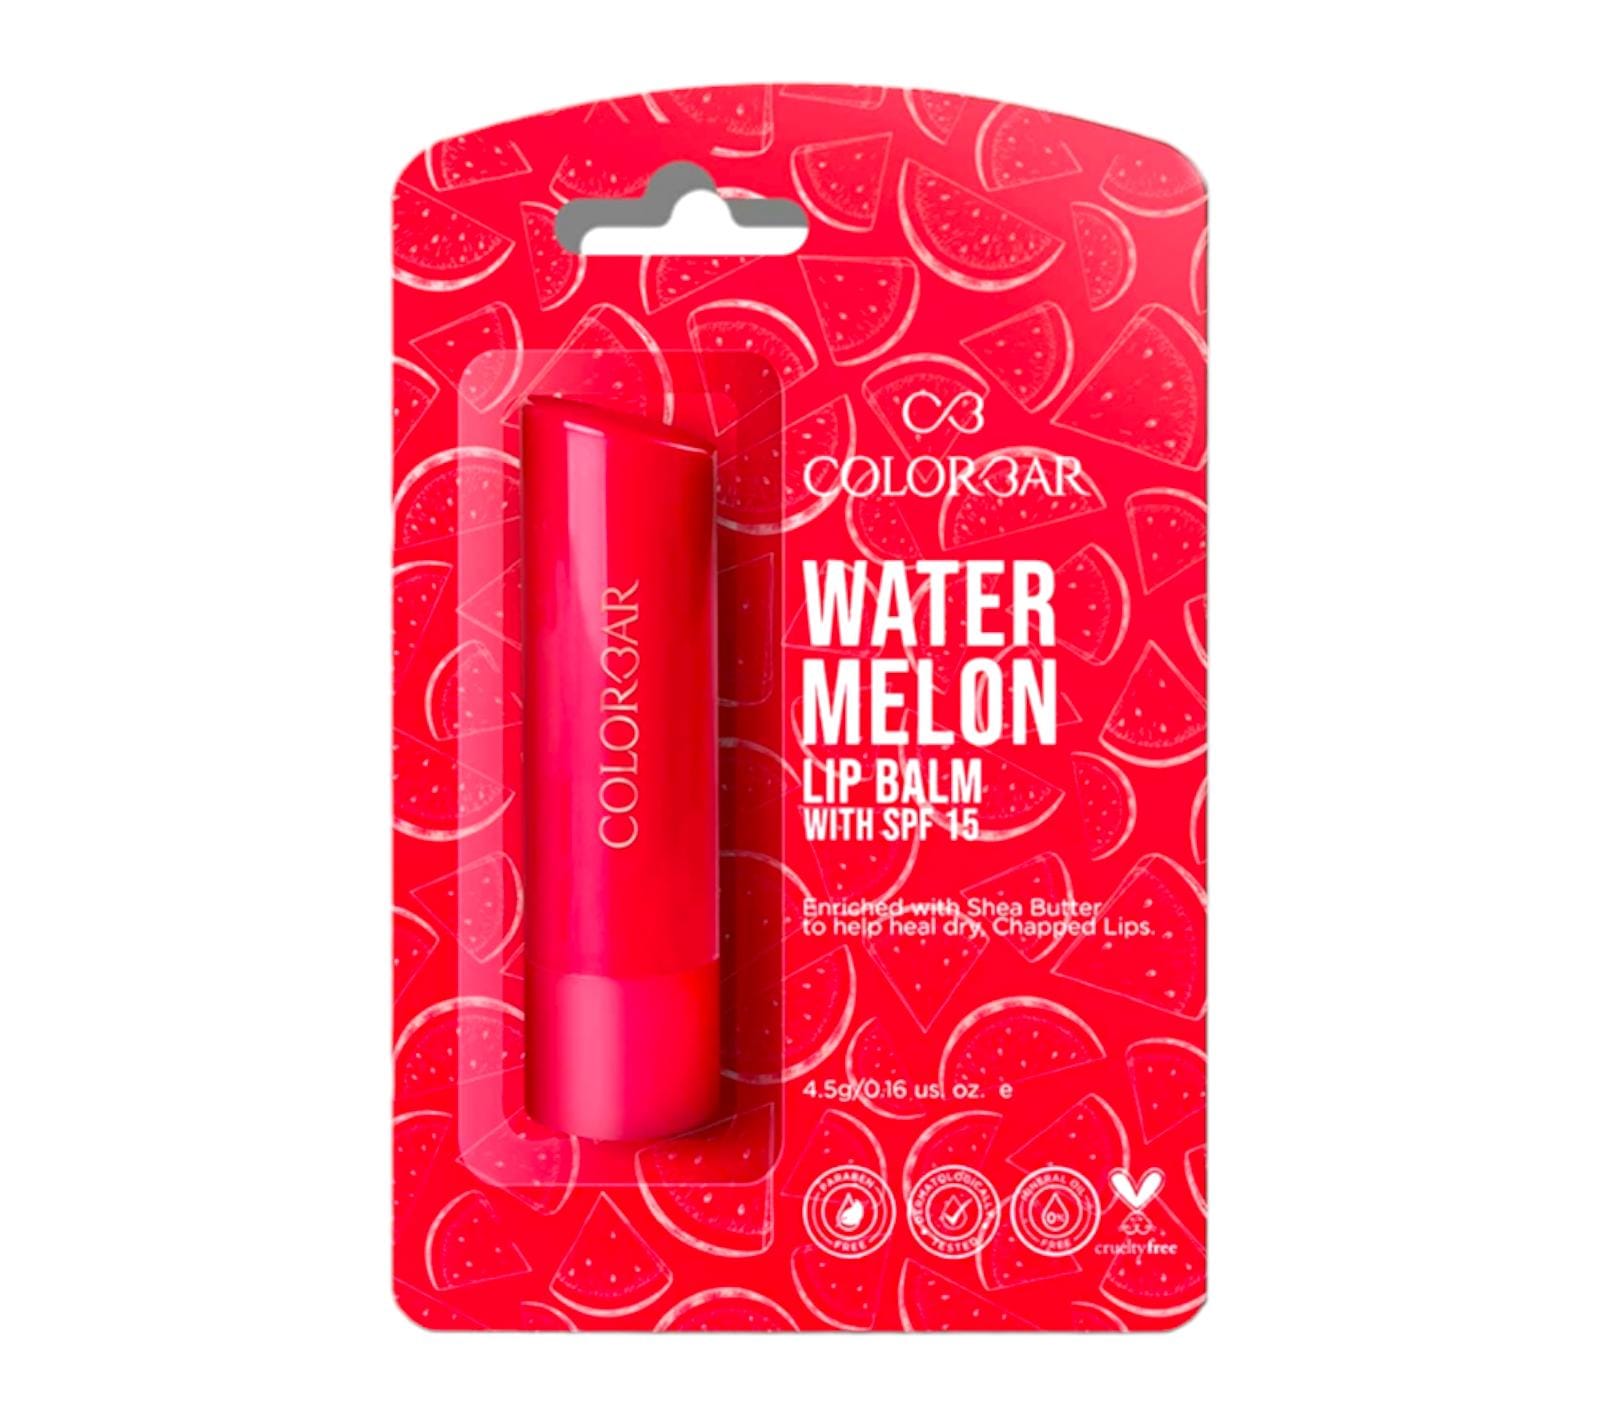 Water Melon Lip Balm